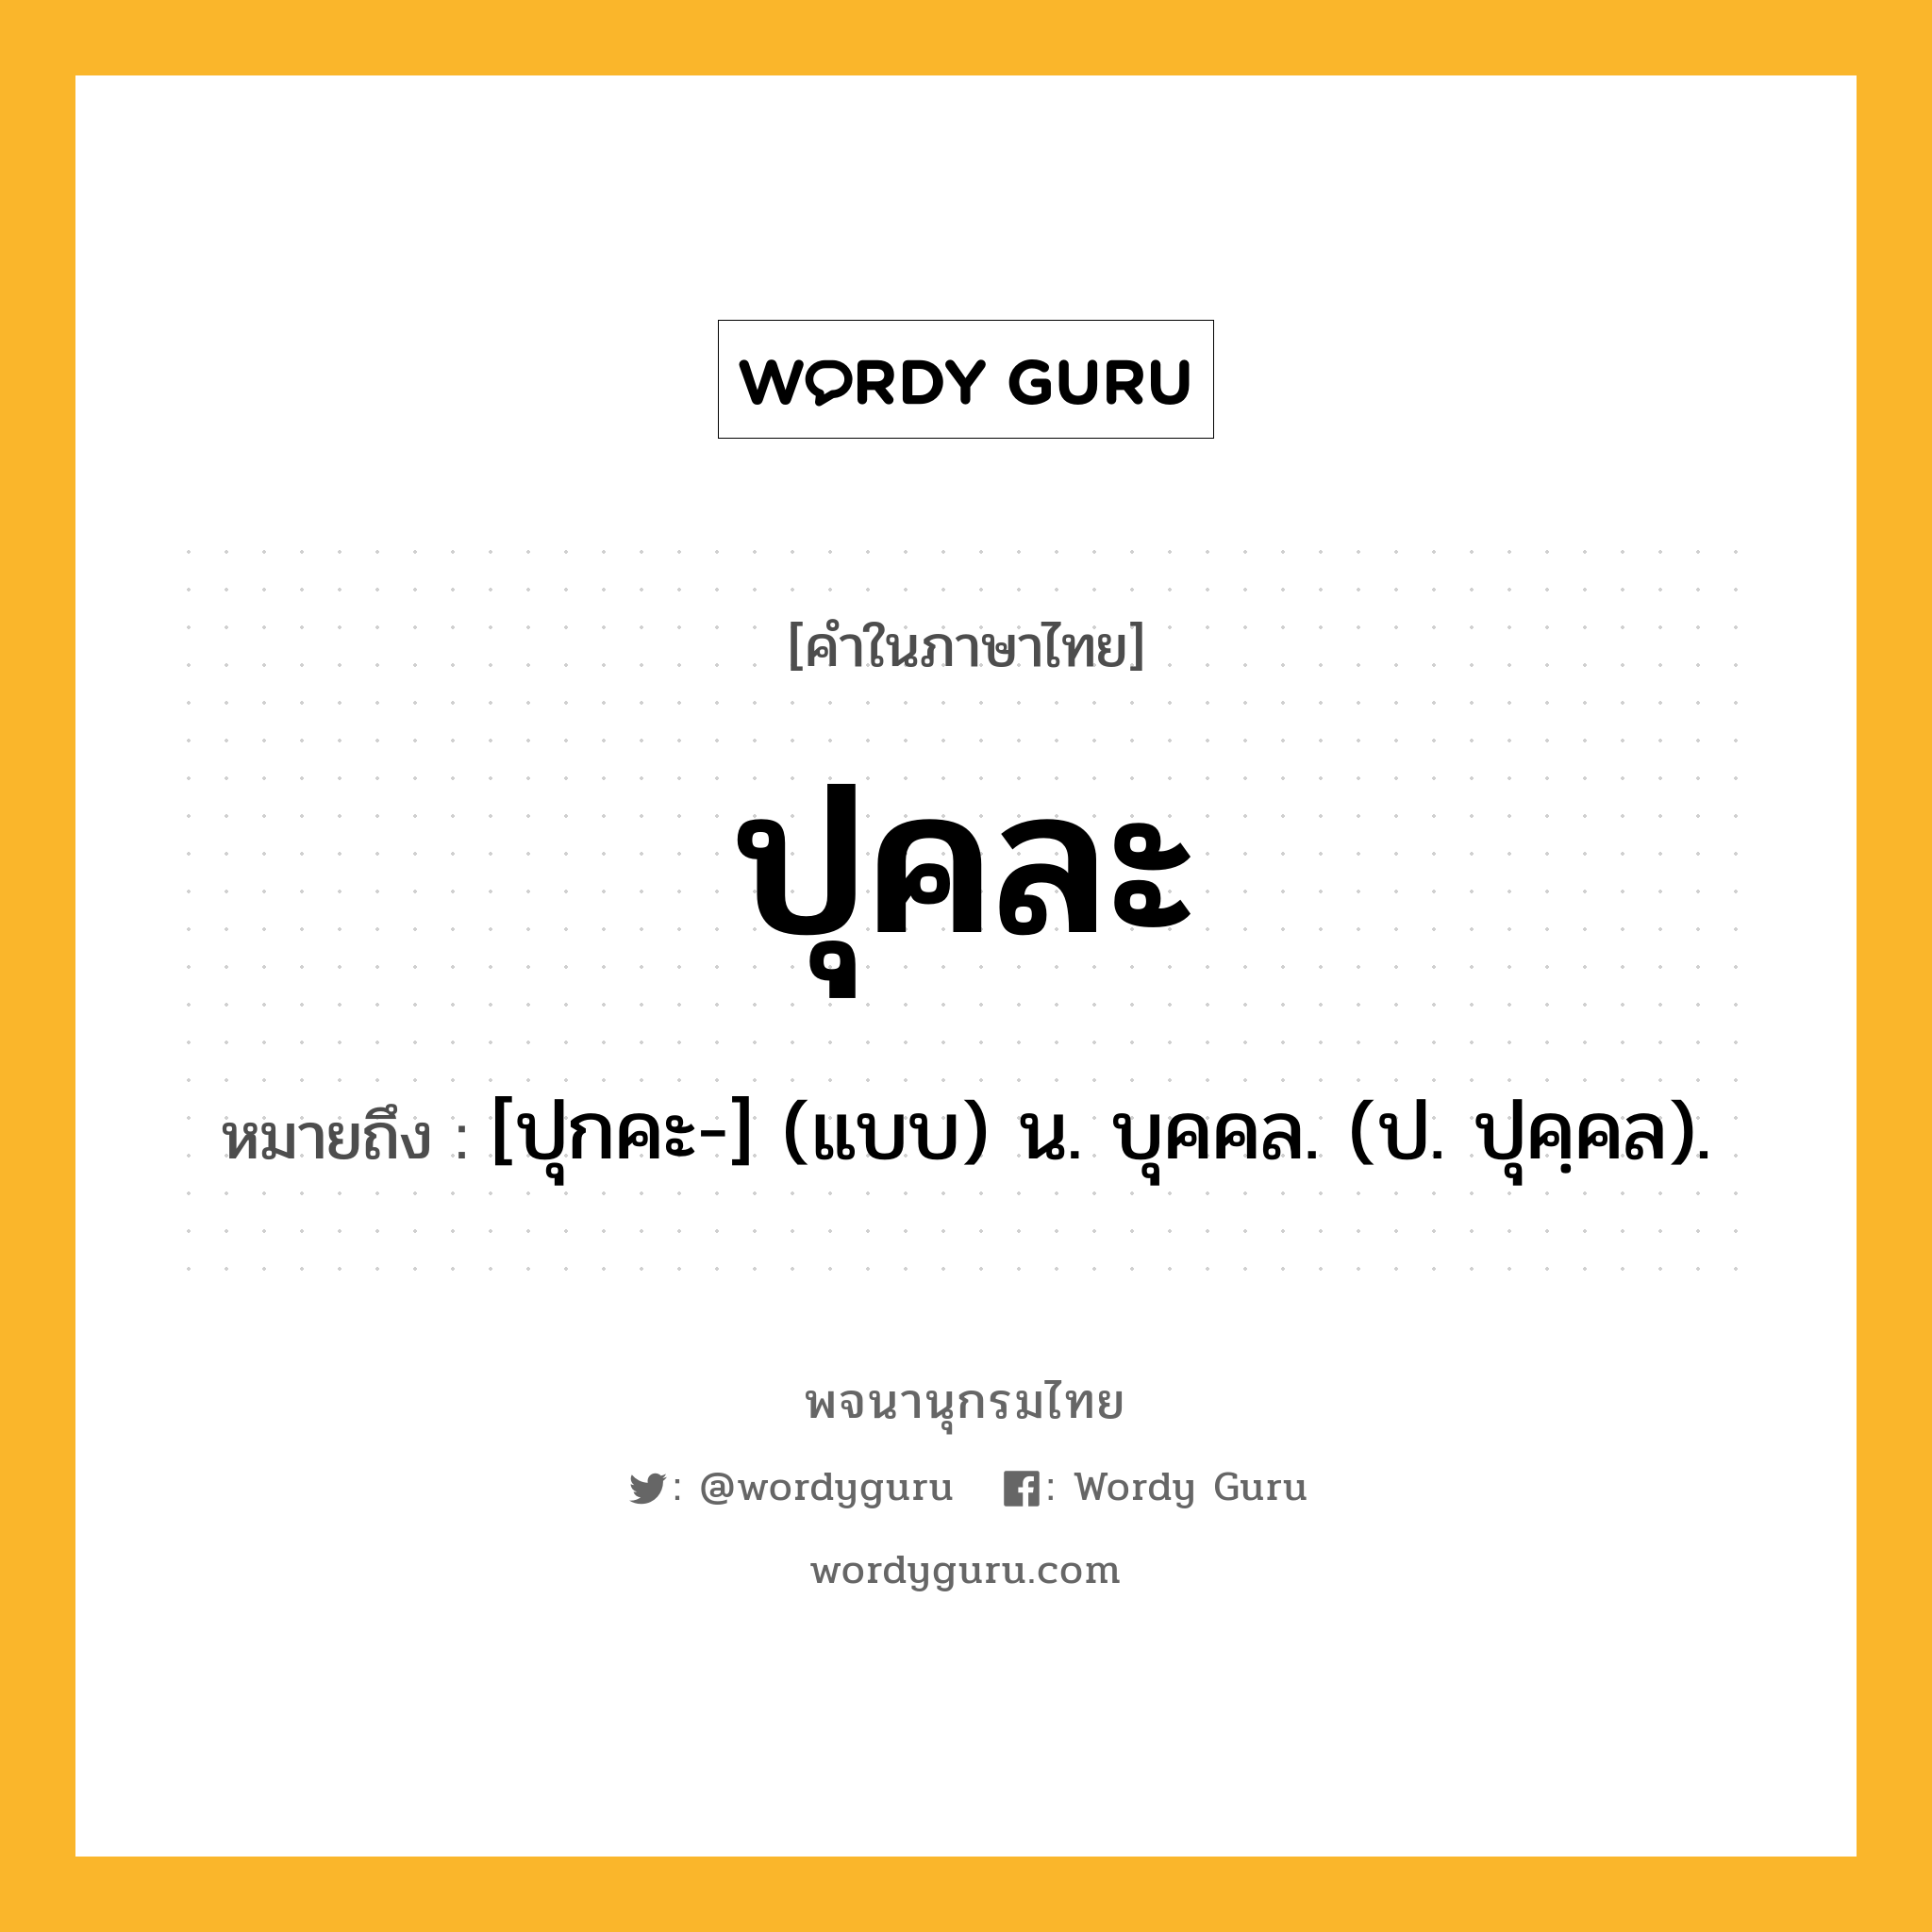 ปุคละ หมายถึงอะไร?, คำในภาษาไทย ปุคละ หมายถึง [ปุกคะ-] (แบบ) น. บุคคล. (ป. ปุคฺคล).